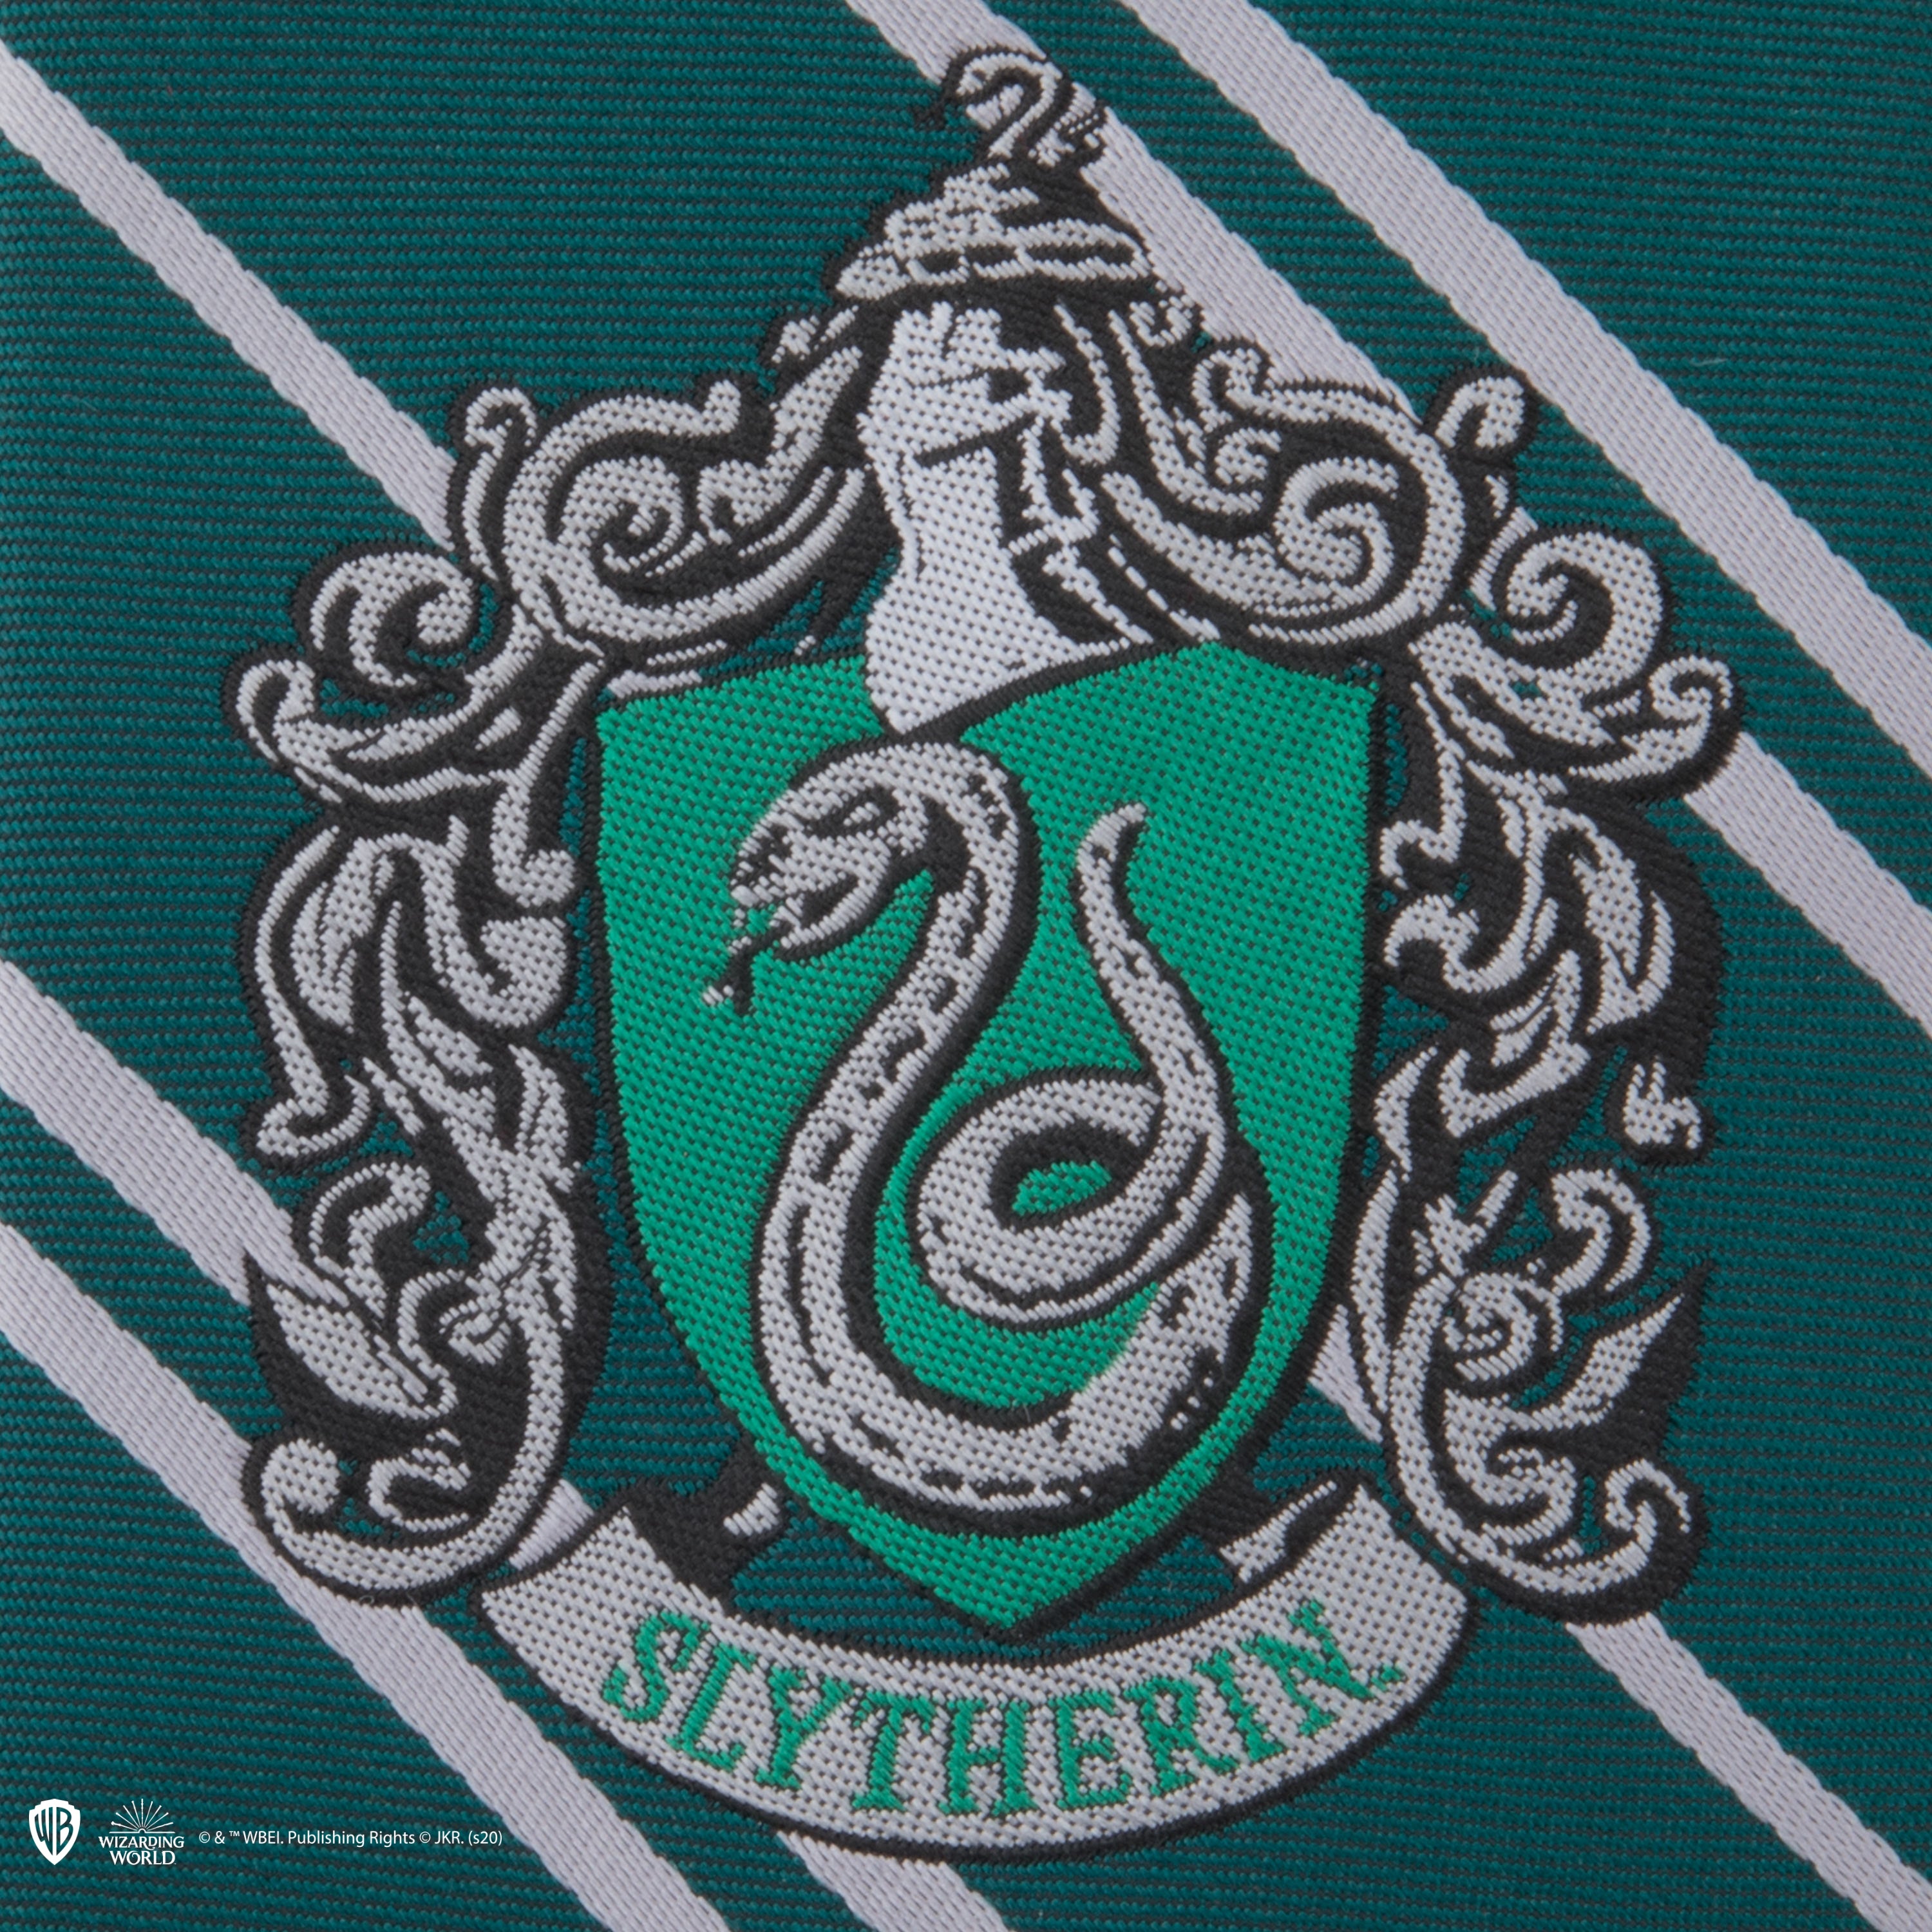 Harry Potter Crest Necklace - Slytherin